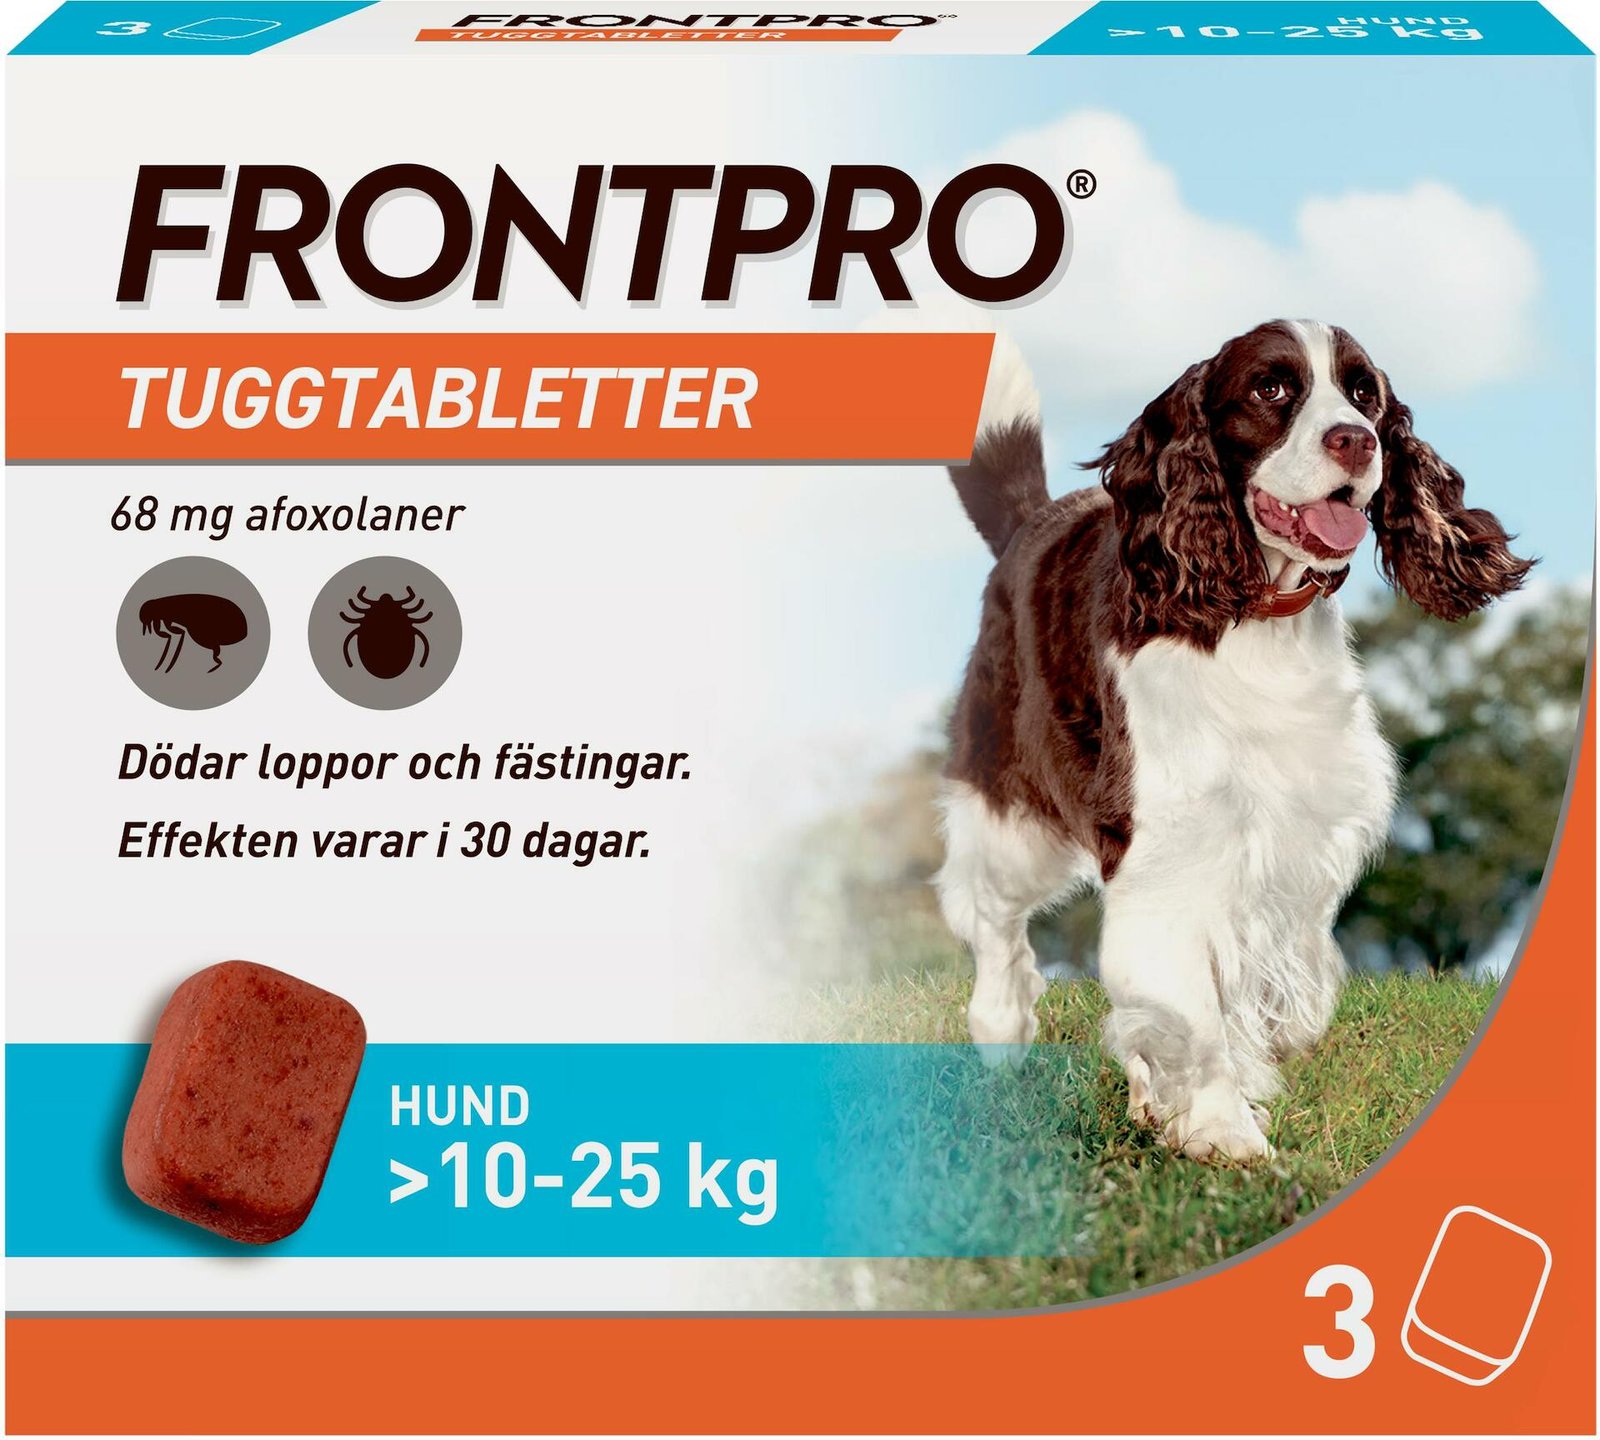 FRONTPRO Hund L 10-25 kg 68 mg afoxolaner 3 tuggtabletter